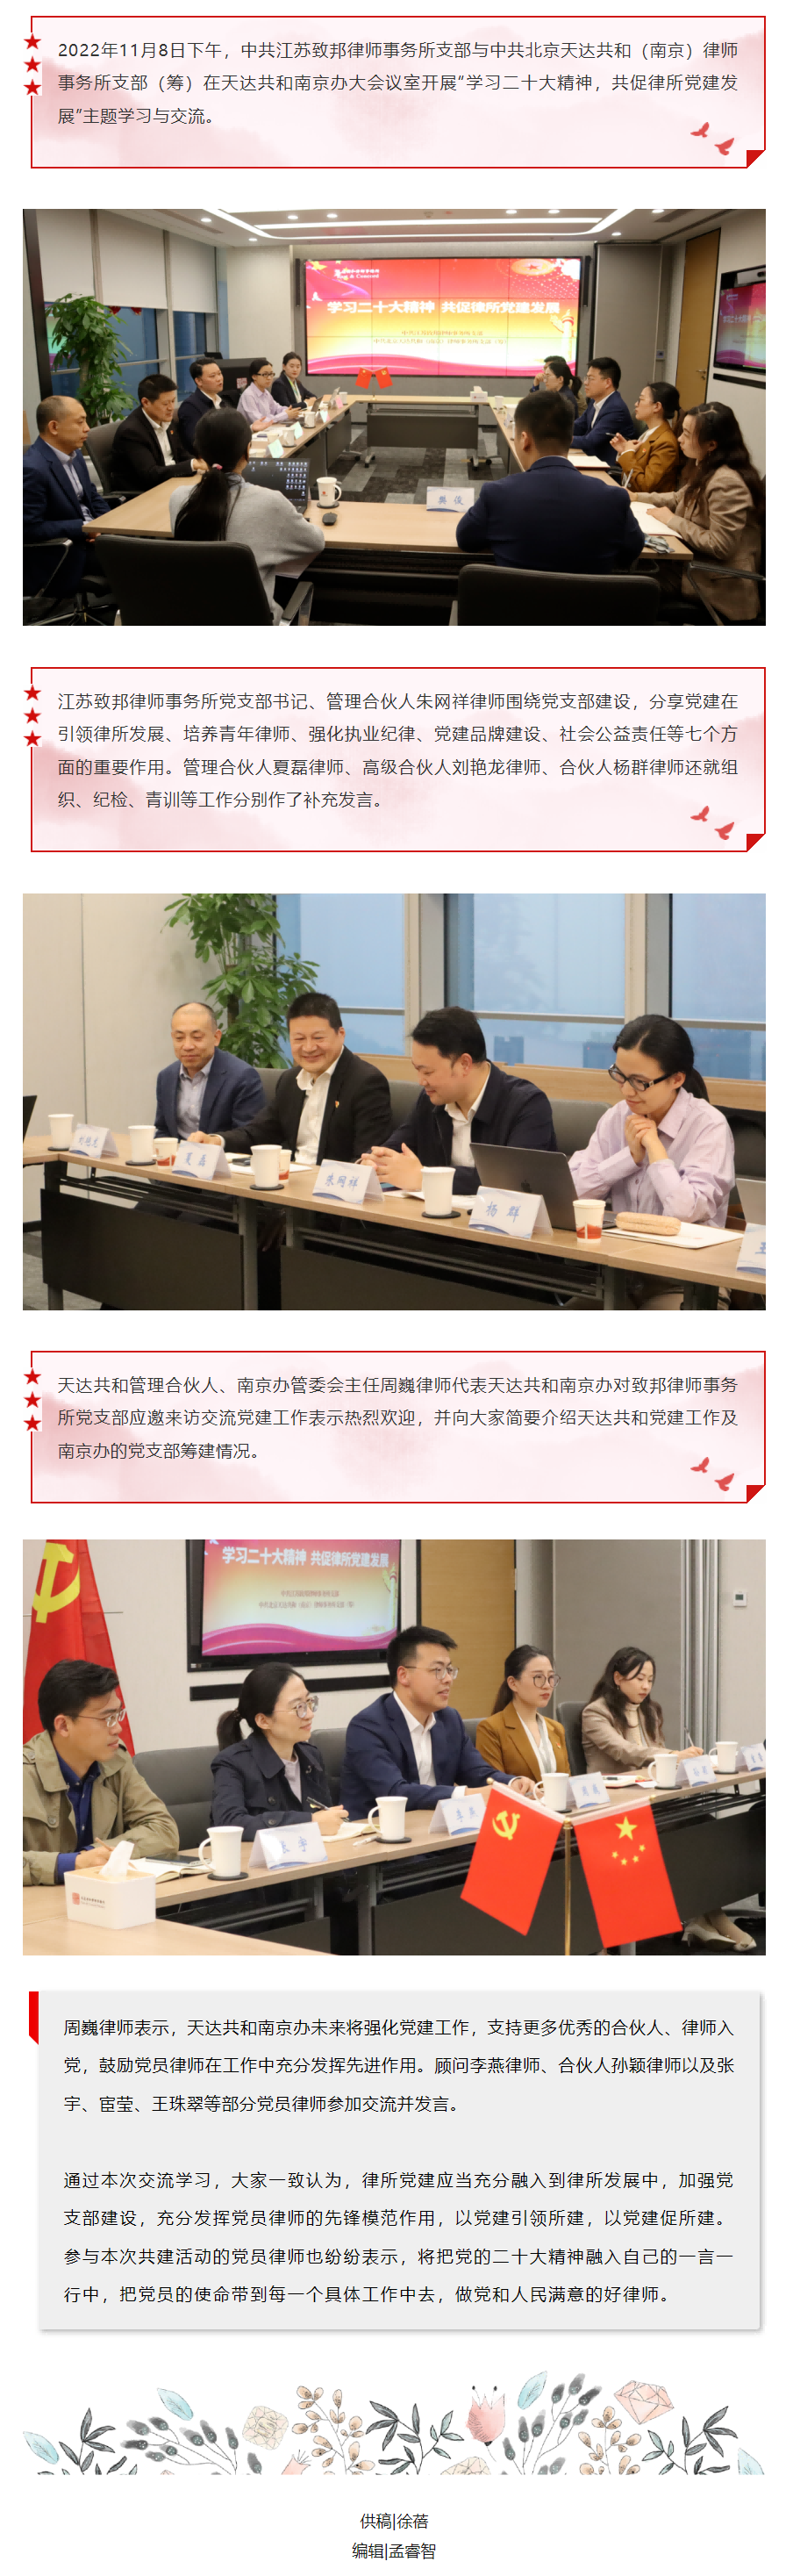 20221115致邦党支部与天达共和（南京）党支部（筹）开展主题共建活动(1).png